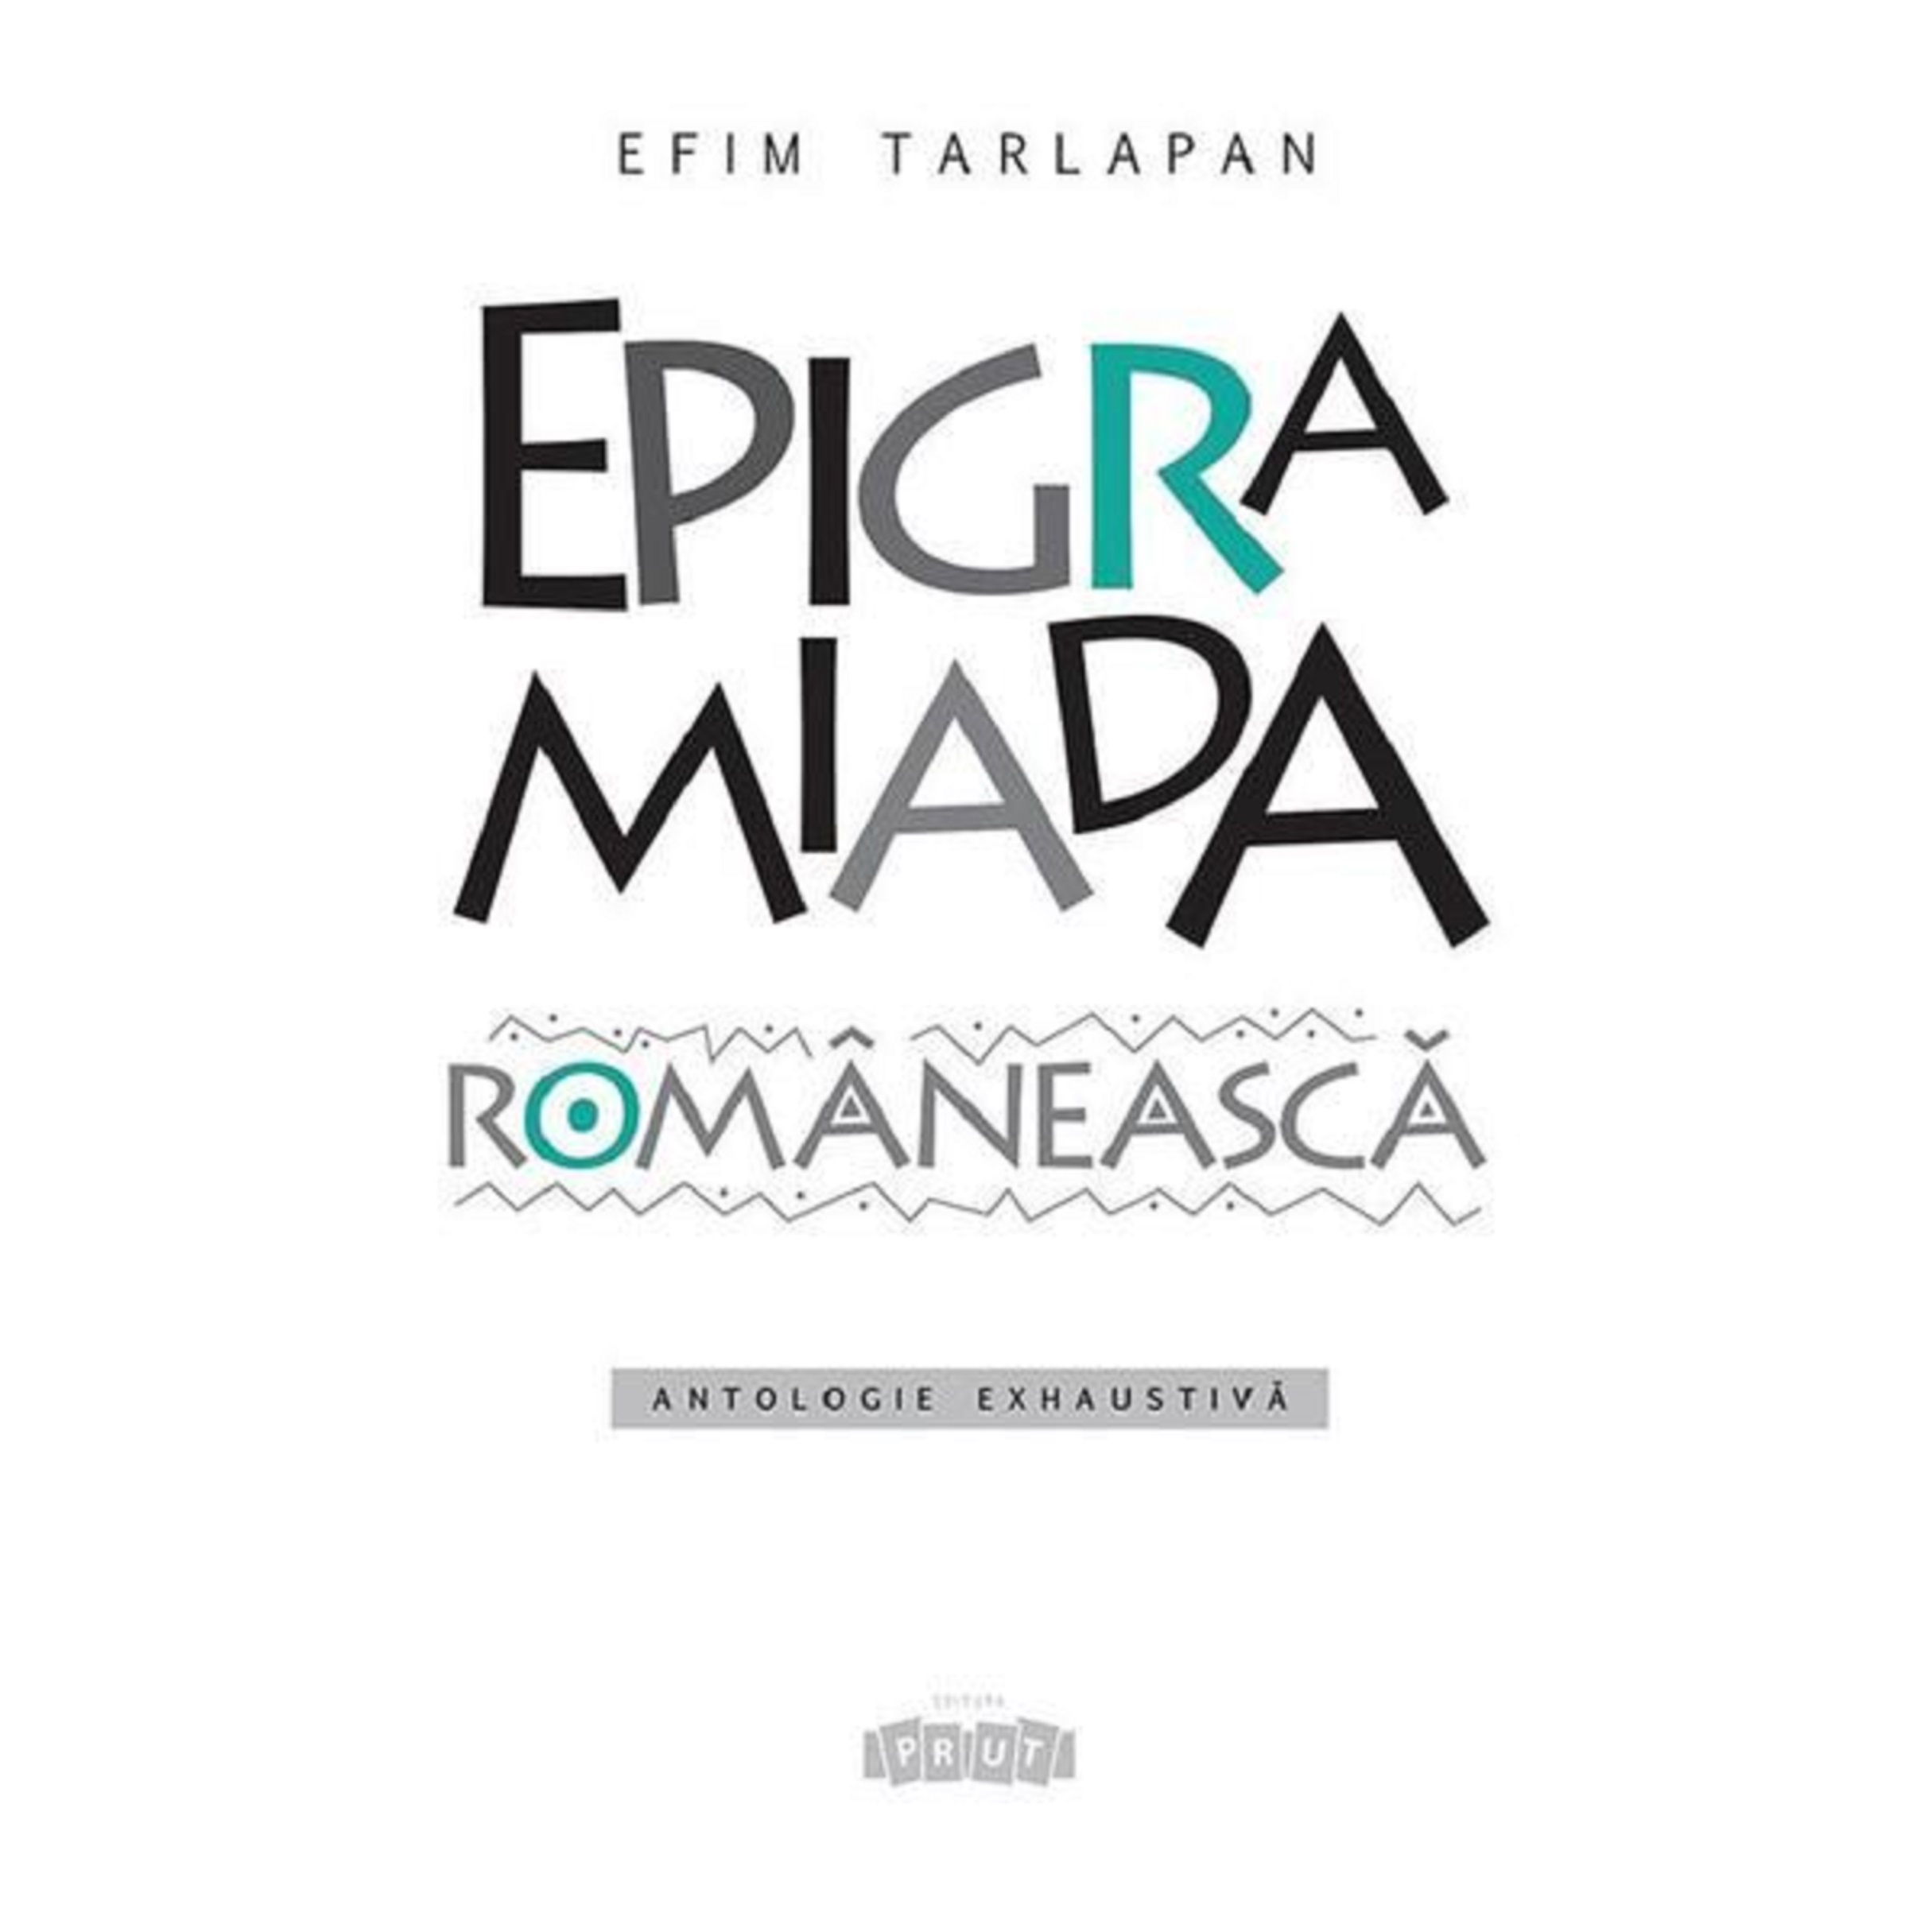 Epigramiada romaneasca | Efim Tarlapan carturesti.ro poza noua